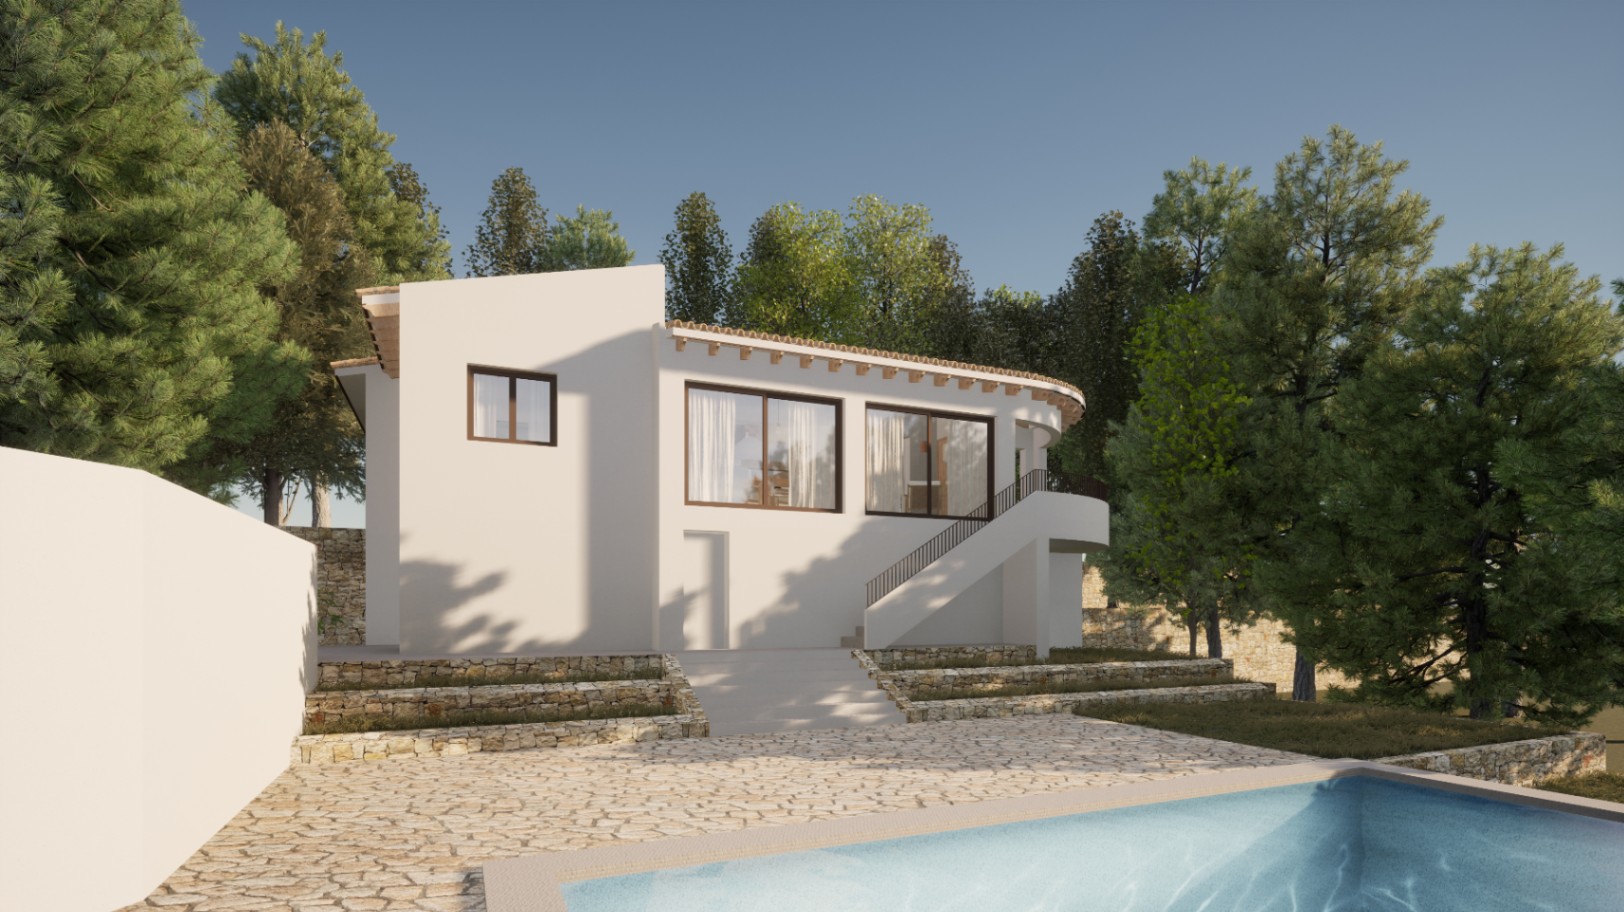 Gerenoveerde villa in Ibiza-stijl met vrij uitzicht op de vallei in Benimeit Moraira